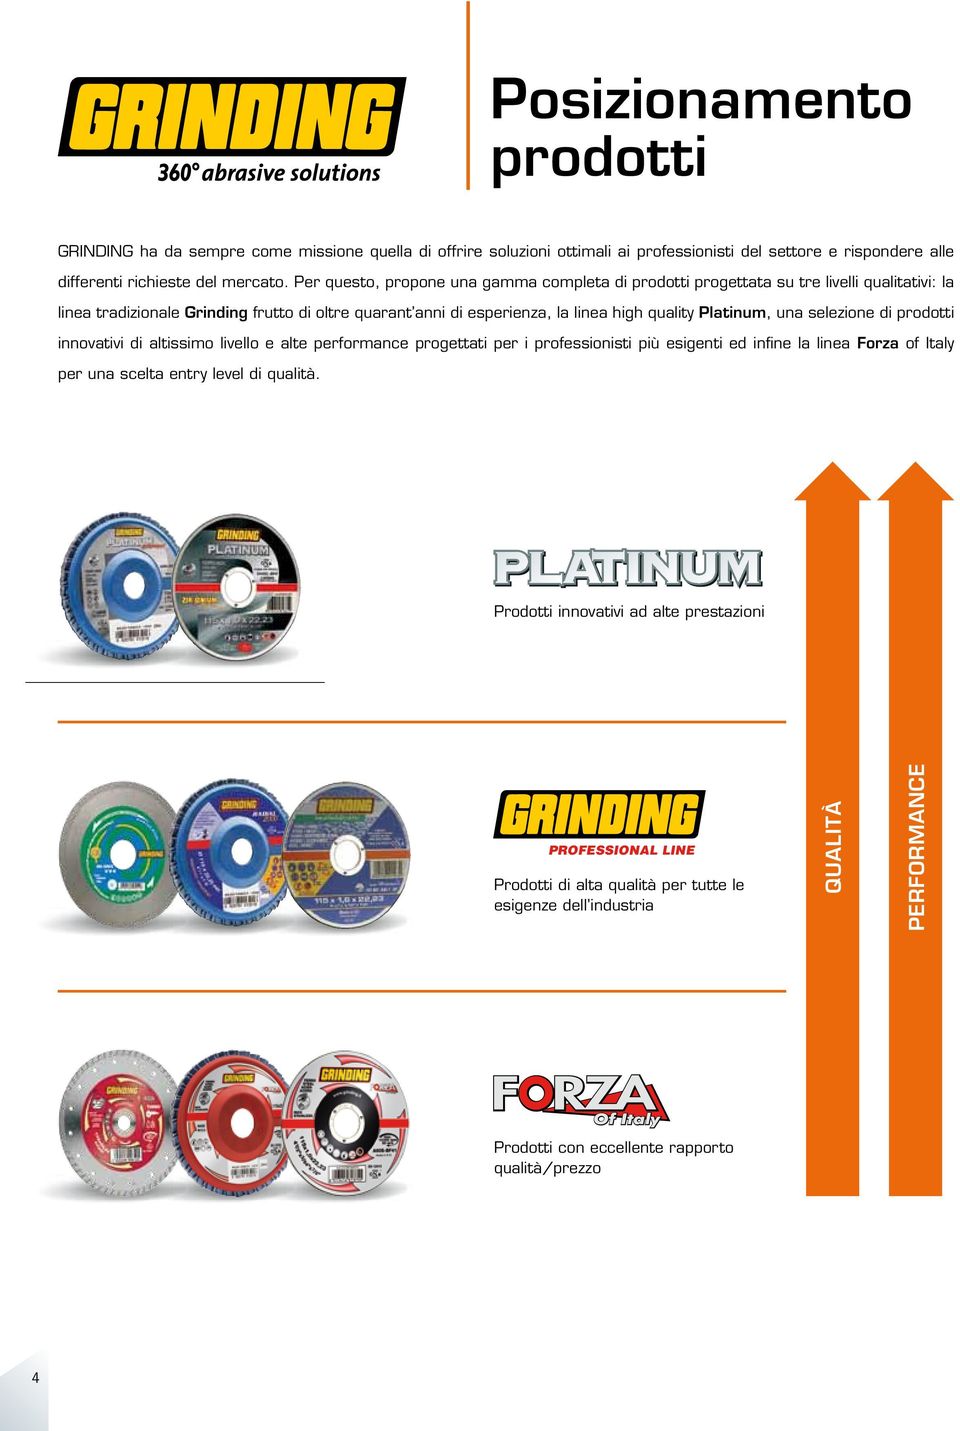 Platinum, una selezione di prodotti innovativi di altissimo livello e alte performance progettati per i professionisti più esigenti ed infine la linea Forza of Italy per una scelta entry